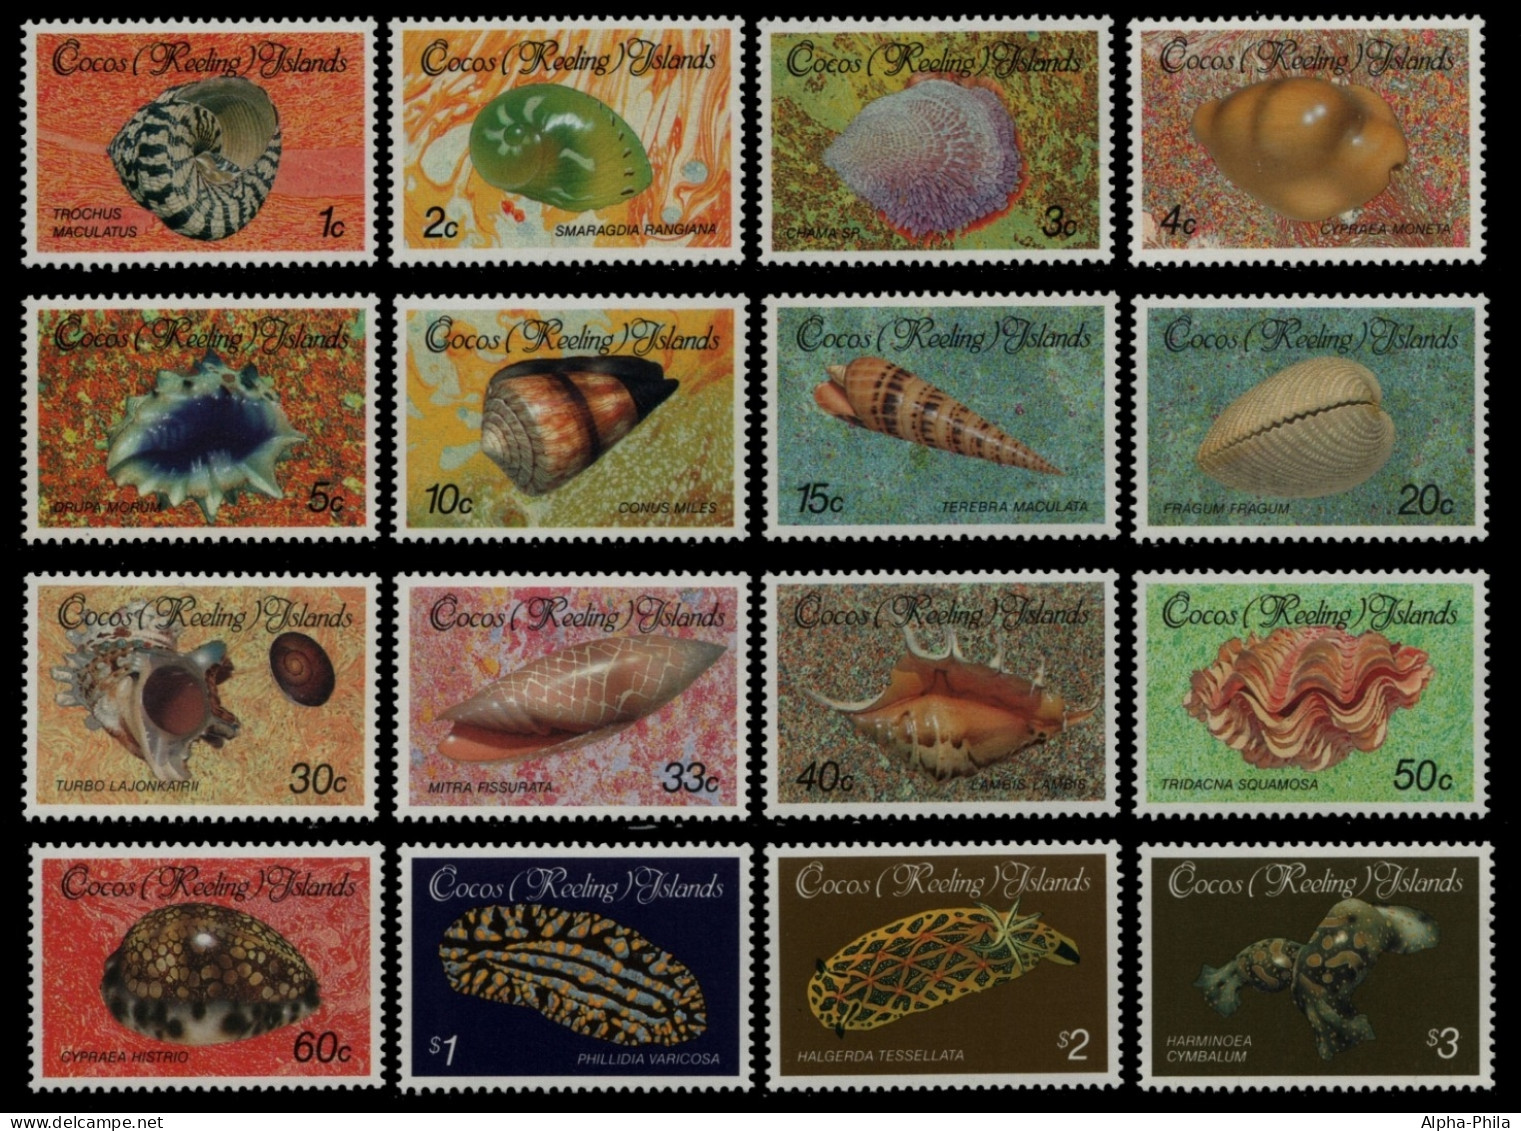 Kokos-Inseln 1985 - Mi-Nr. 140-155 ** - MNH - Meeresschnecken / Marine Snails - Cocos (Keeling) Islands